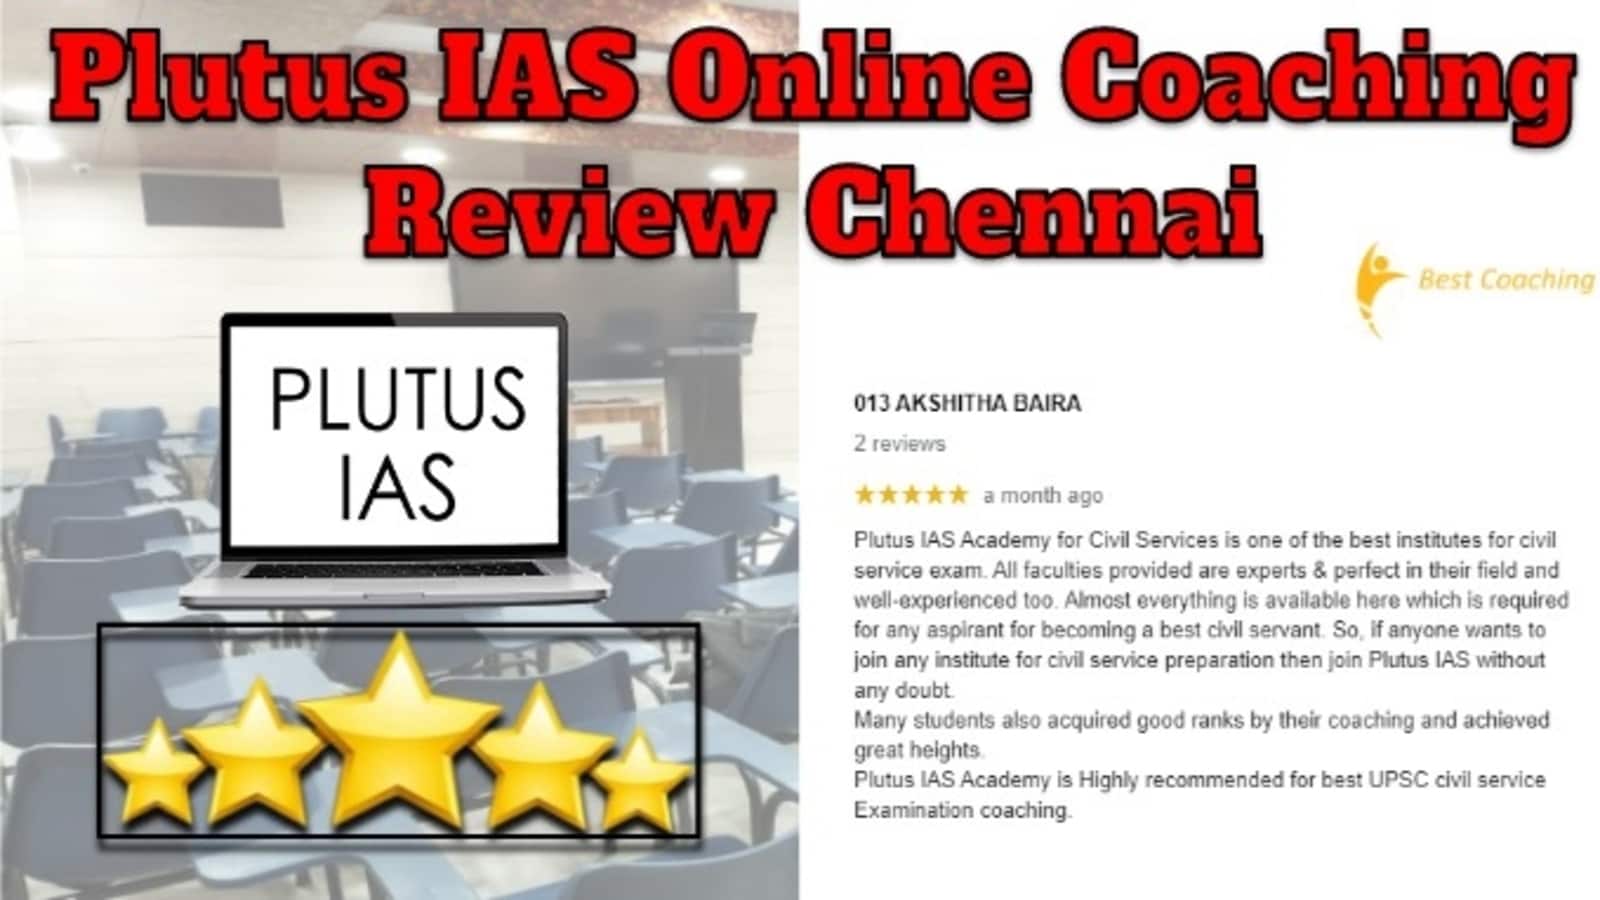 Plutus IAS Online Coaching Review Chennai